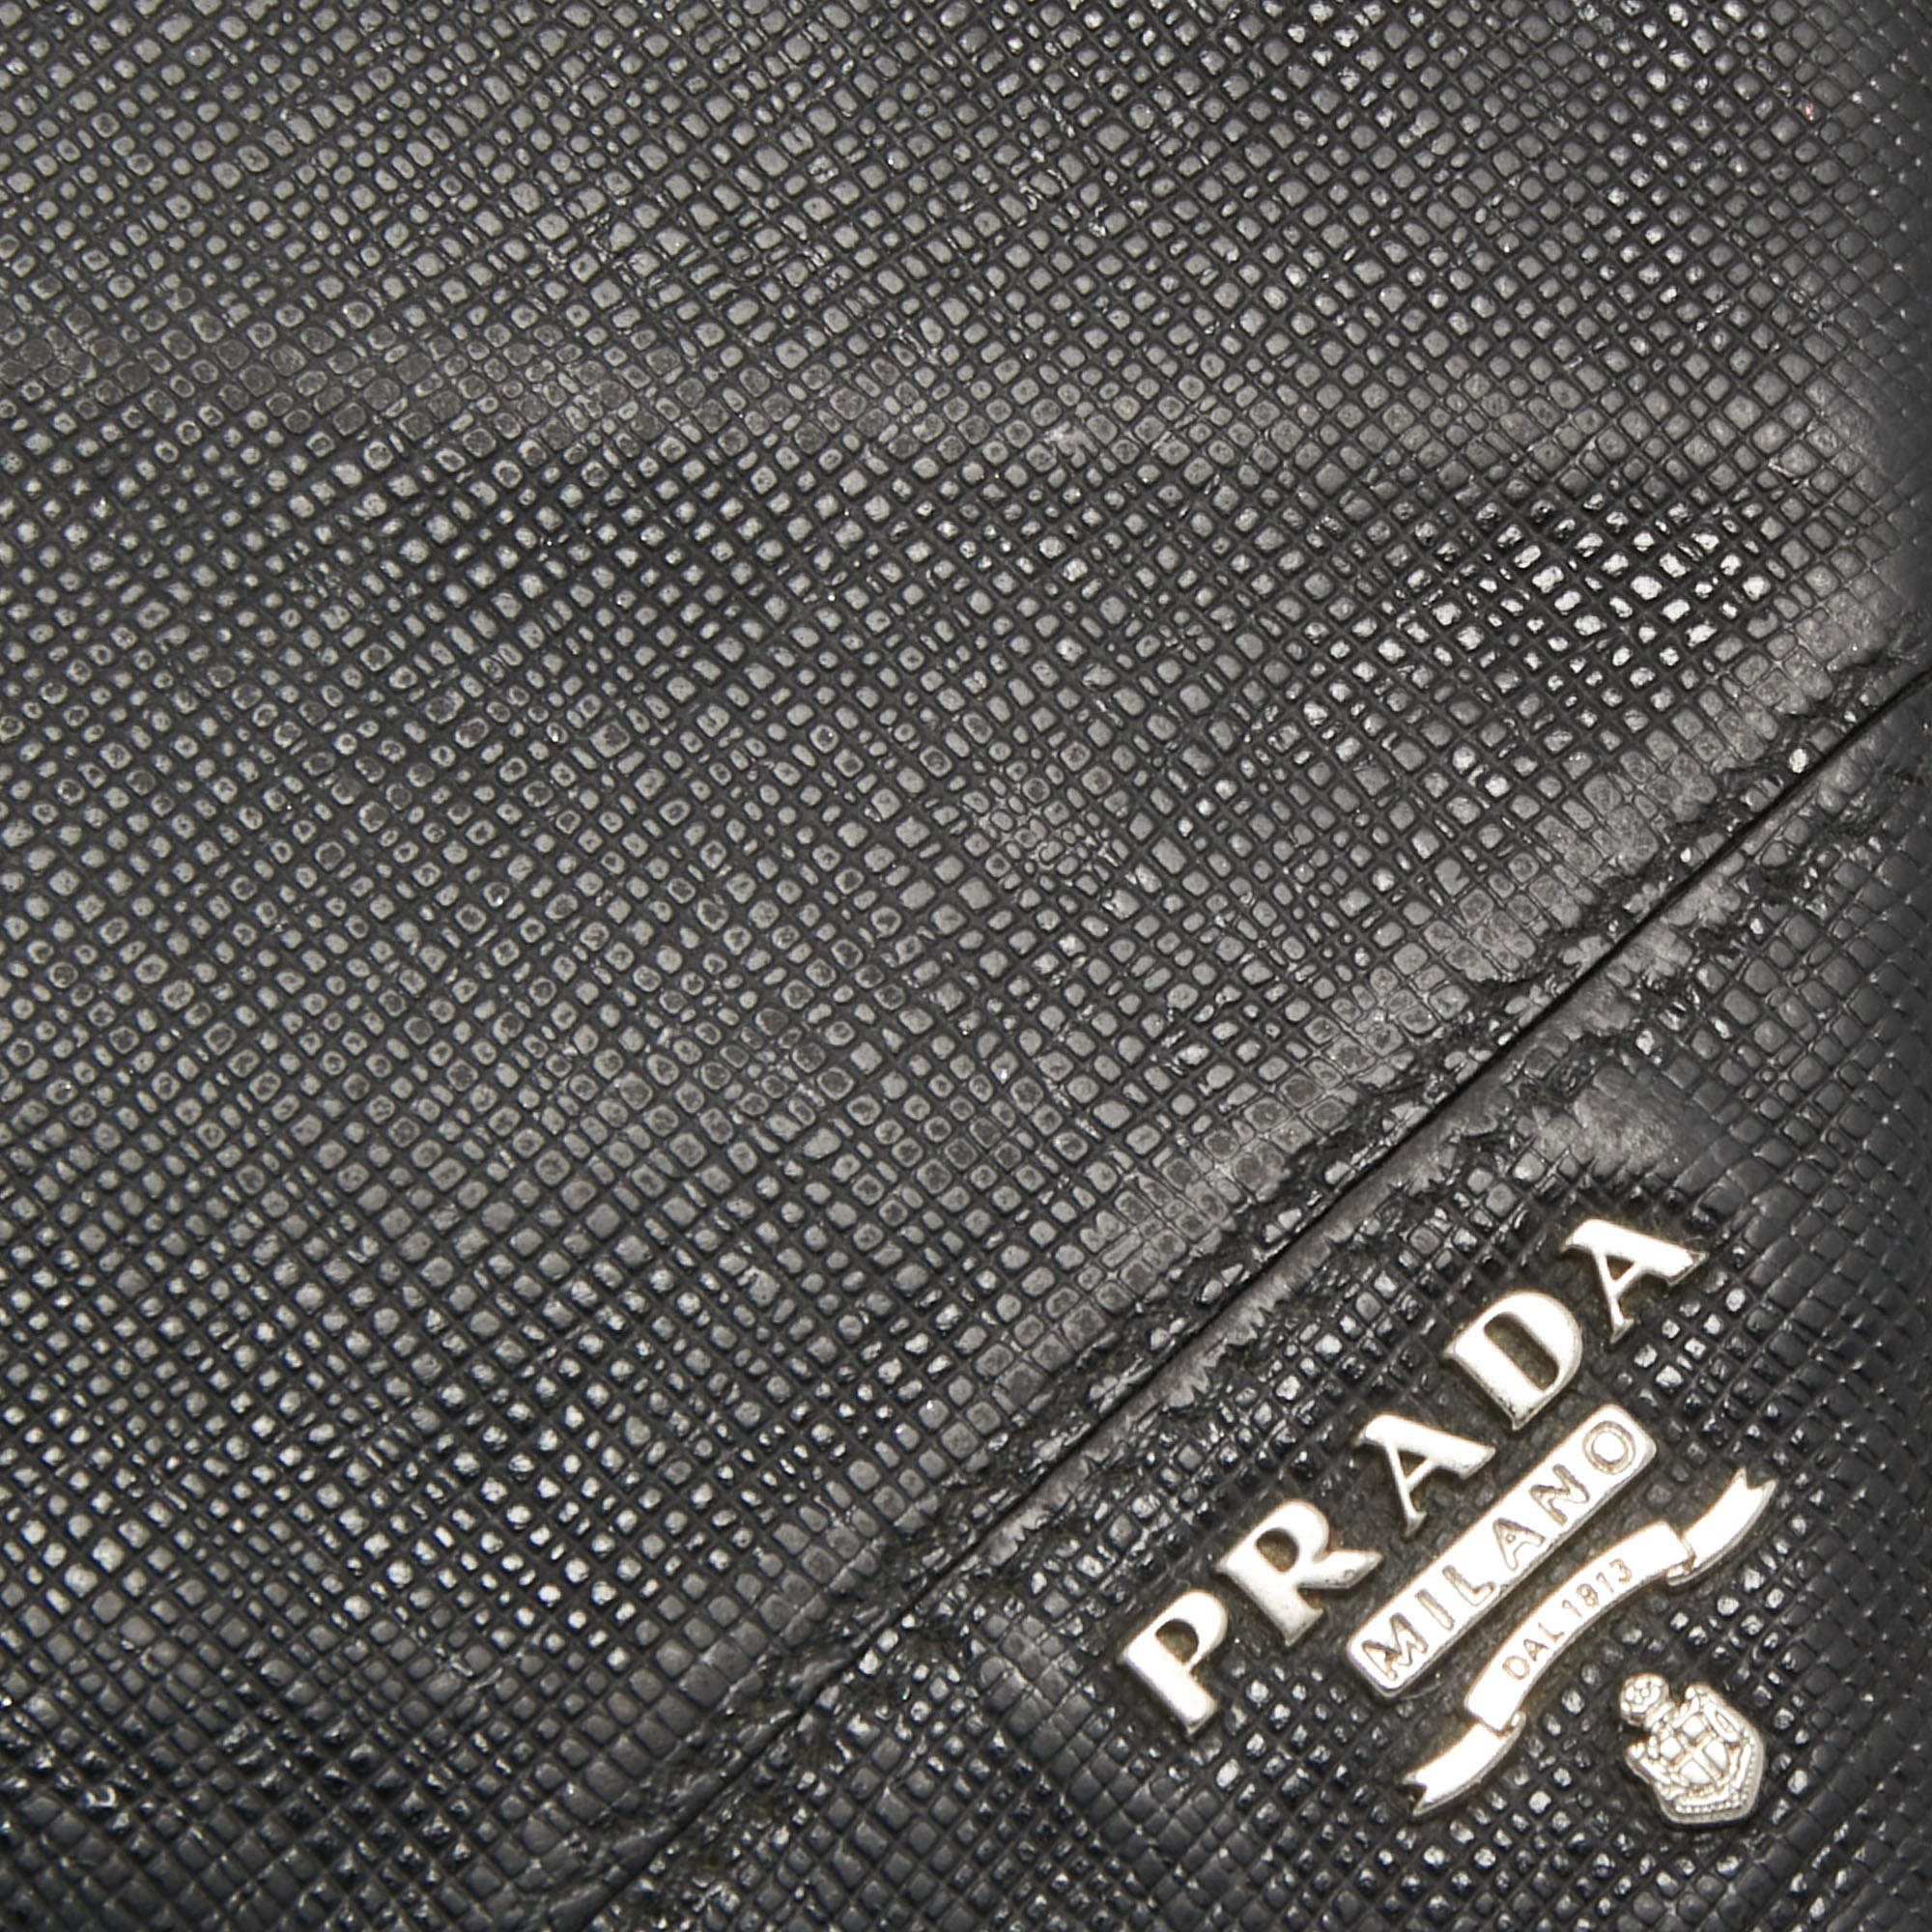 Prada wallet money clip กระเป๋าสตางค์ พราด้า ของแท้ ส่งฟรีEMS ทั้ง